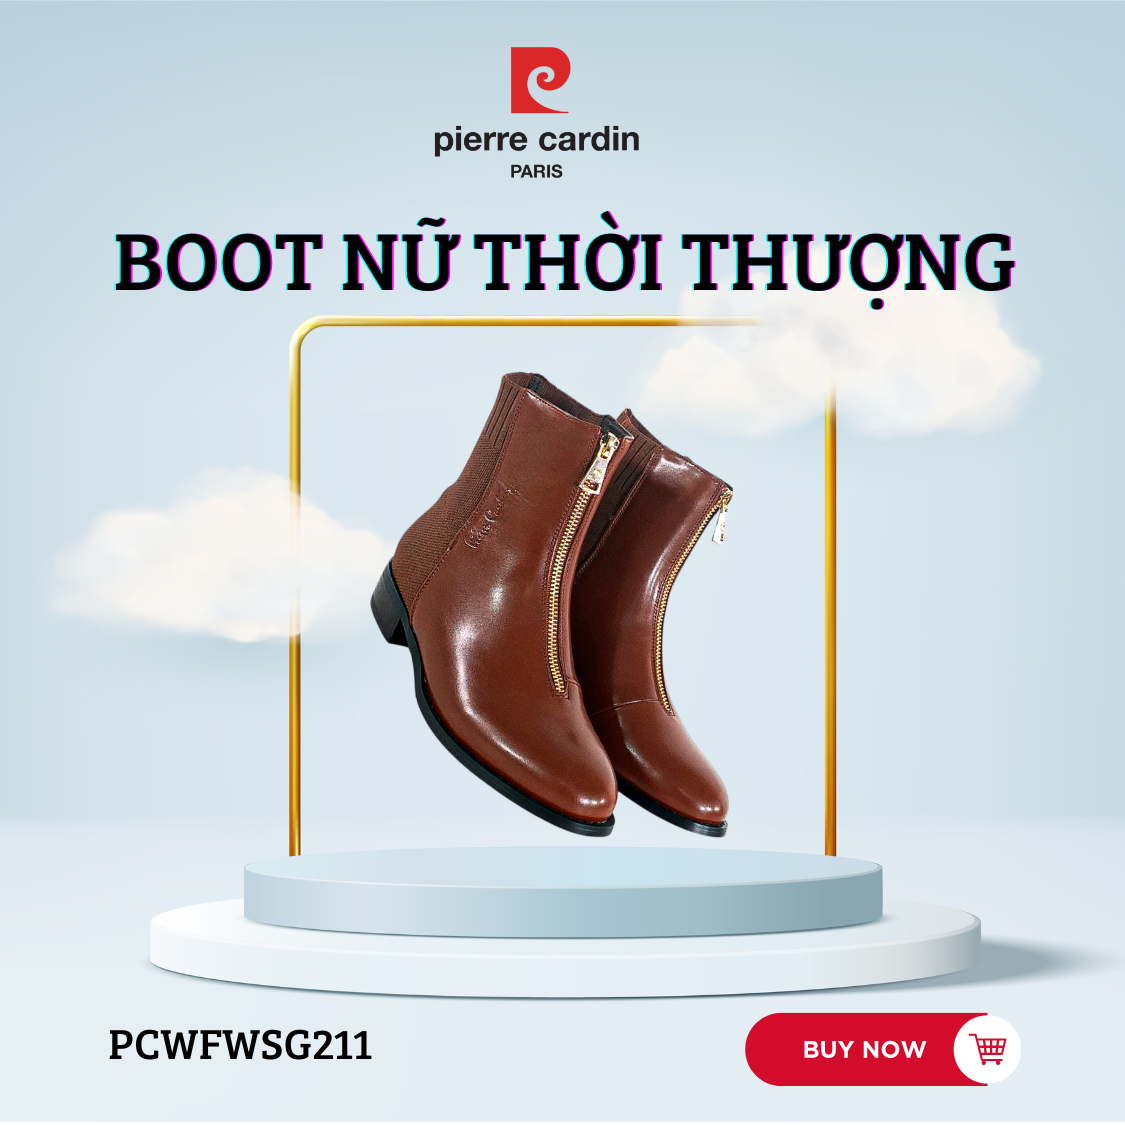 Pierre Cardin Paris Vietnam: Woman Boots - PCWFWSG 211